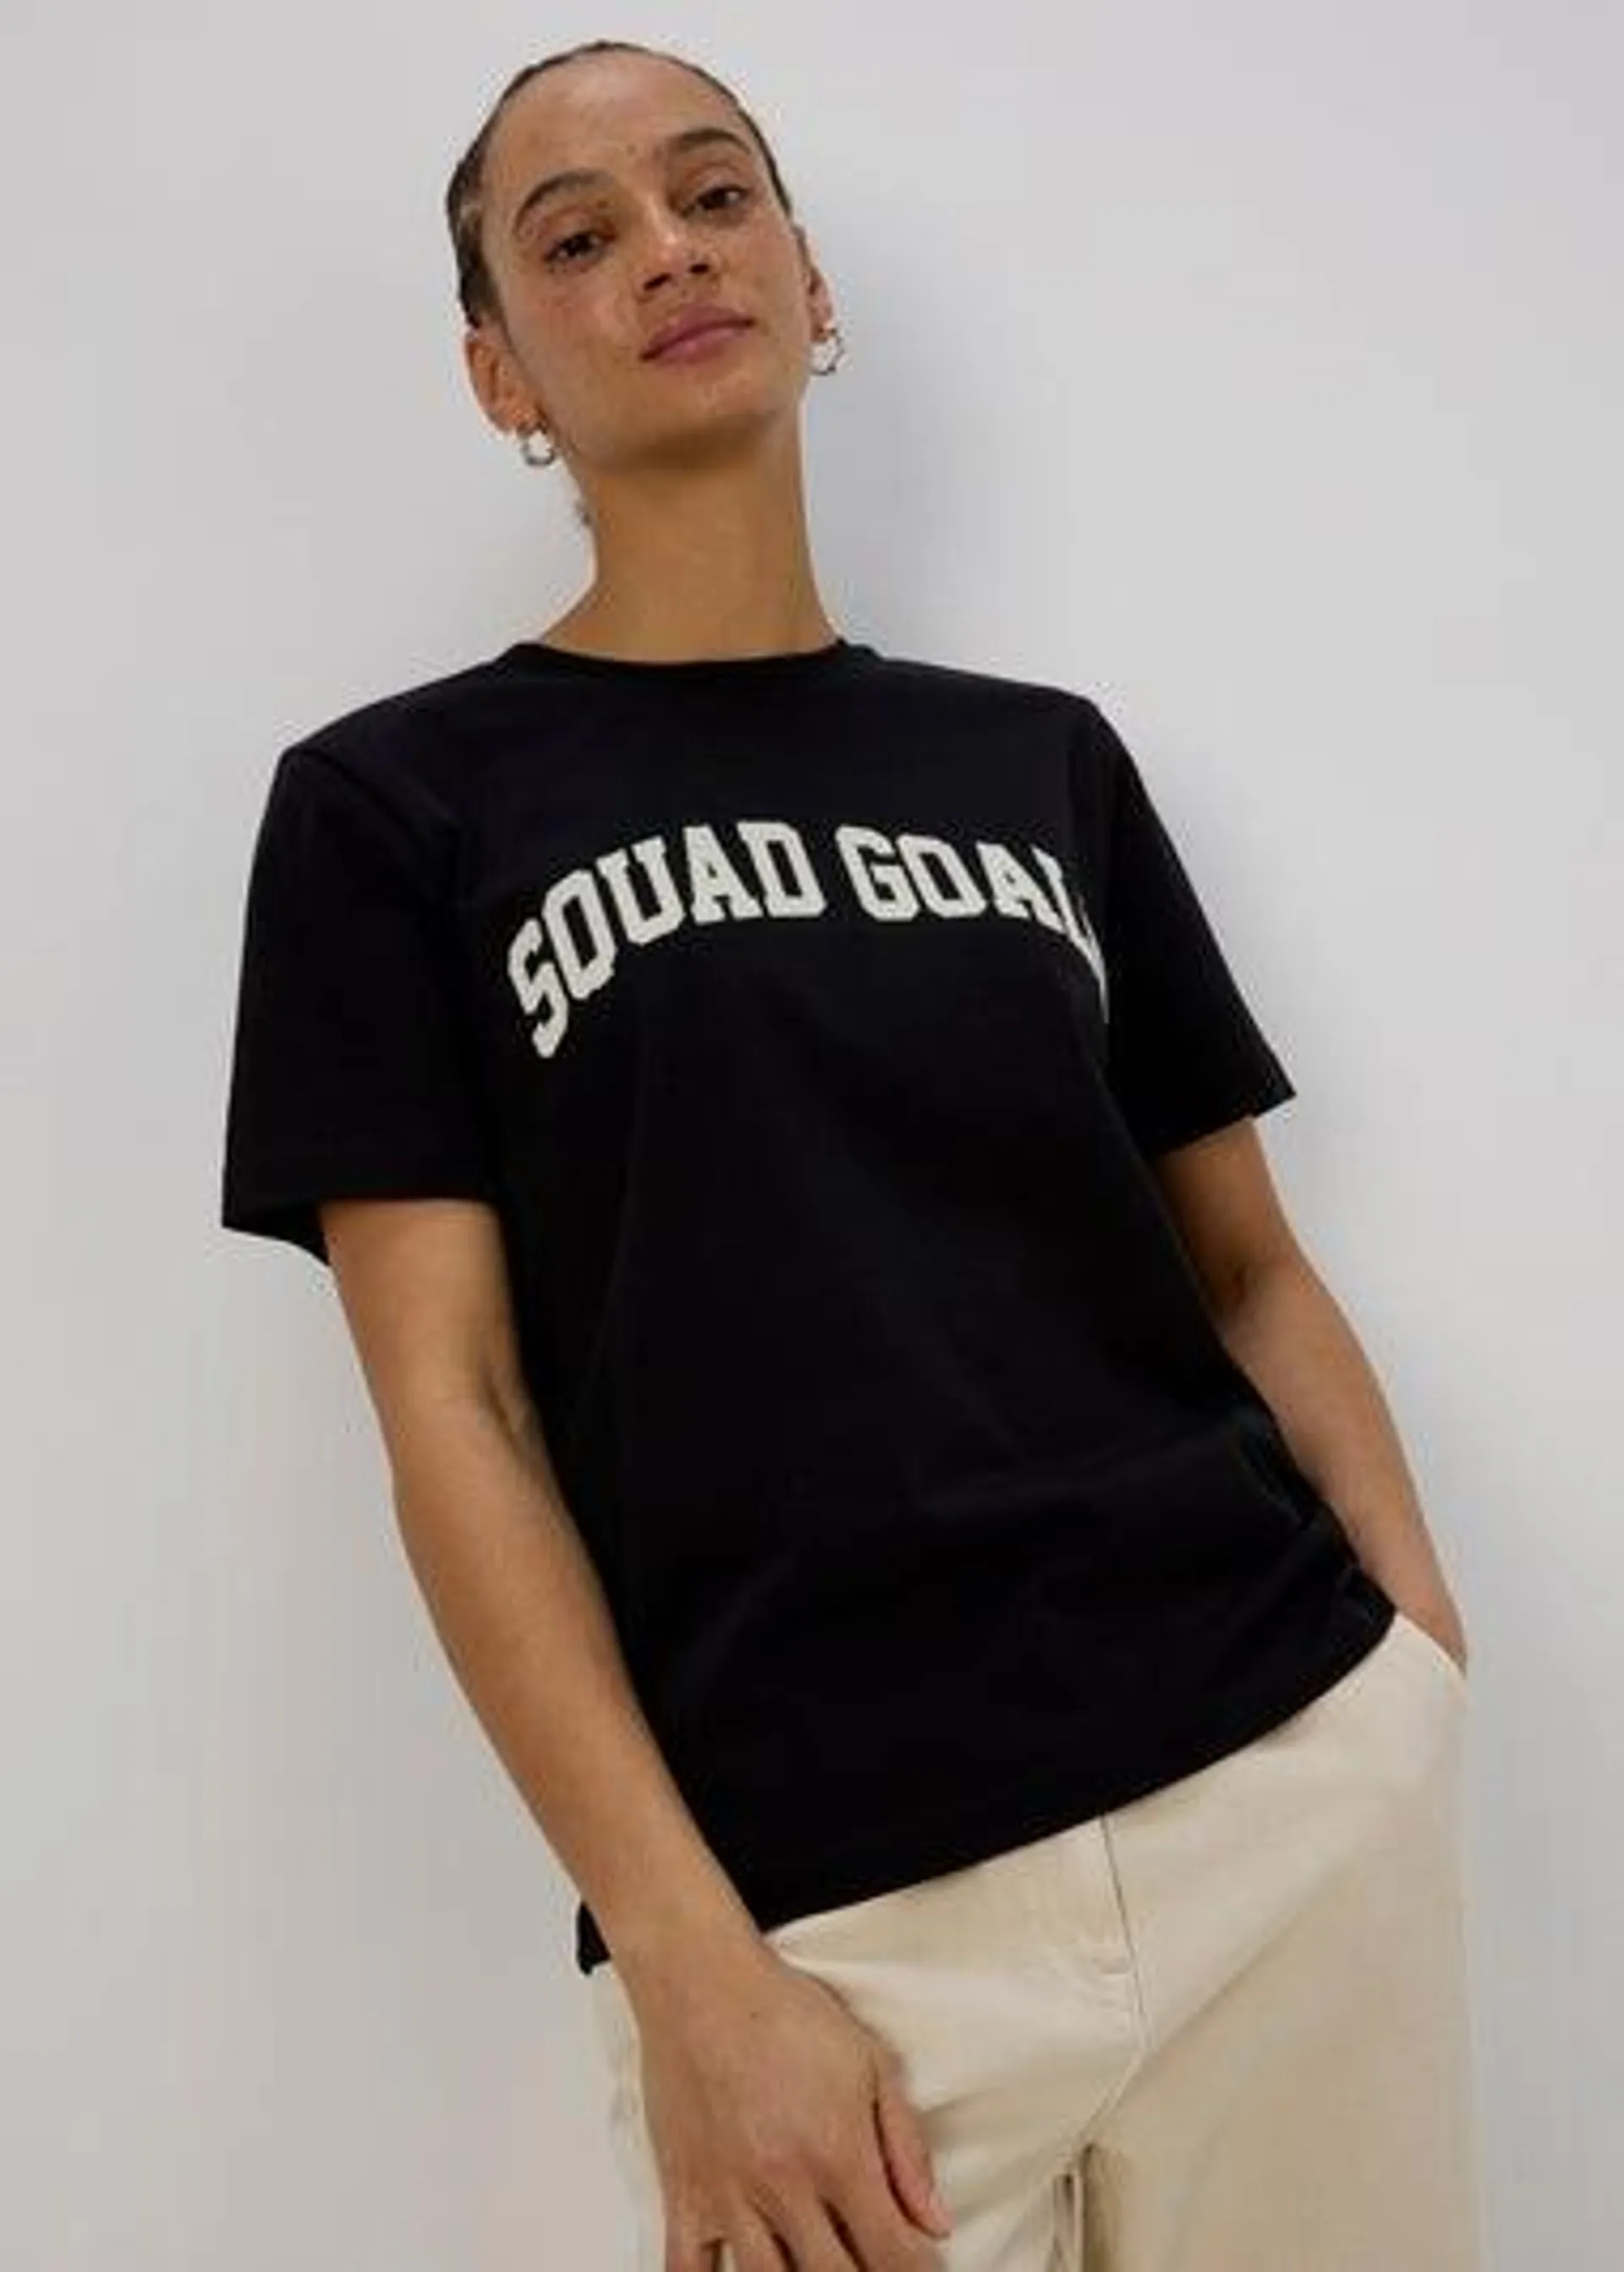 Black Squad Goals T-Shirt - Small